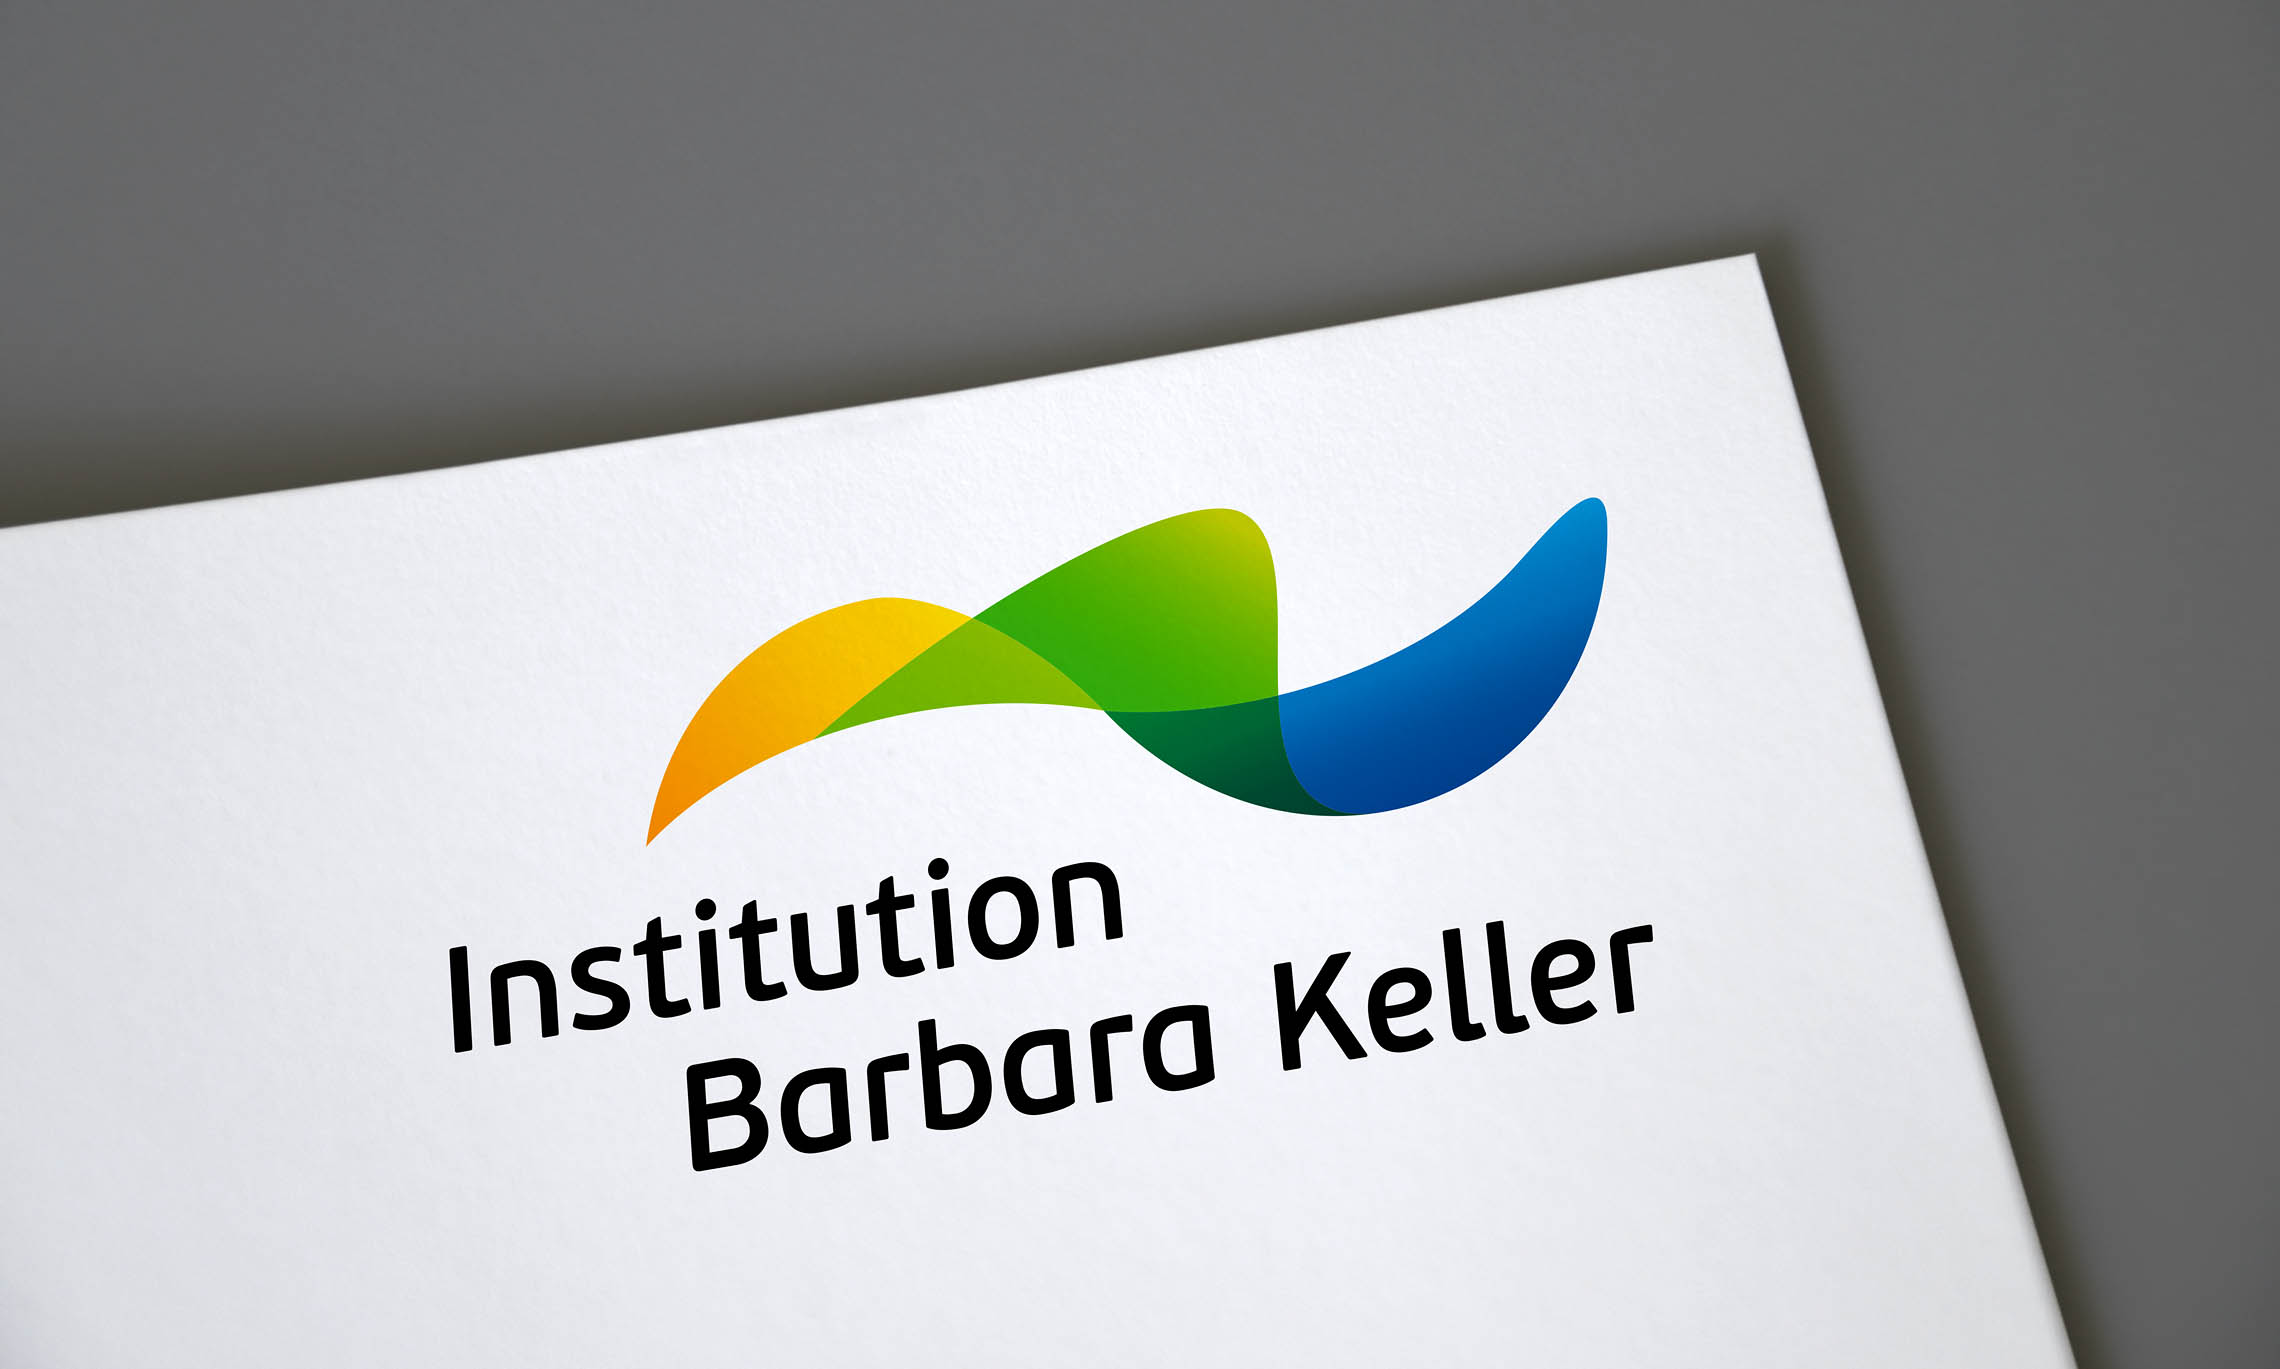 Das Logo der Institution Barbara Keller besteht aus einem gelben, grünen und blauen Schwungelement. Gelb steht für den Bereich "arbeiten", grün für den Bereich "lernen" und blau für den Bereich "wohnen". Unter dem Signet steht Institution Barbara Keller in einer kursiven Schrift.